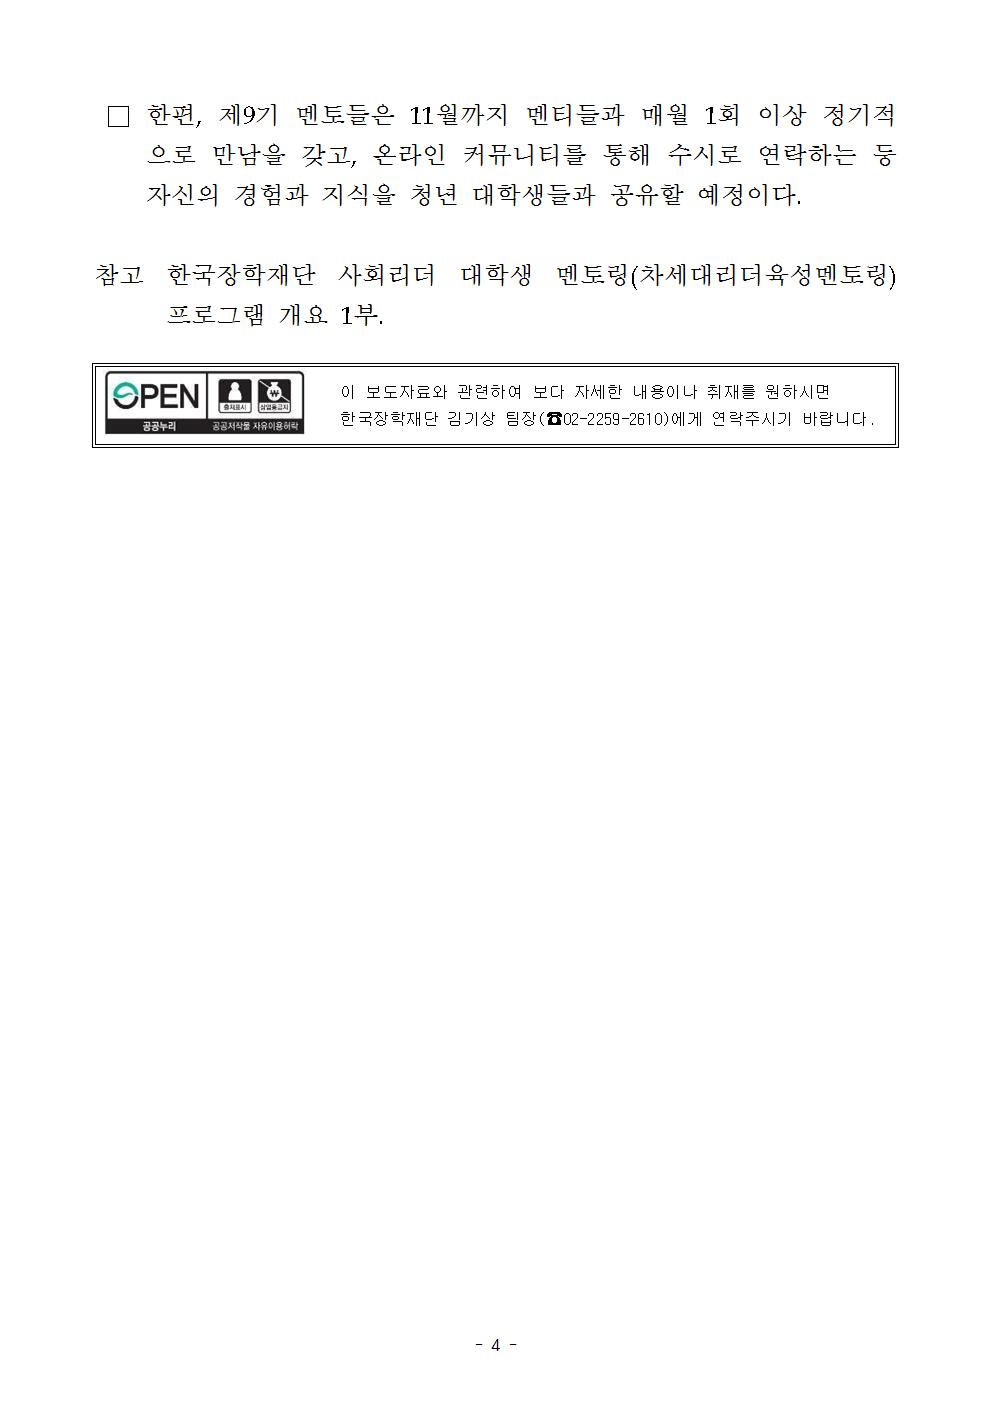 04-09(월)[보도자료] 한국장학재단, 사회리더-대학생 멘토링 오리엔테이션 개최004.jpg